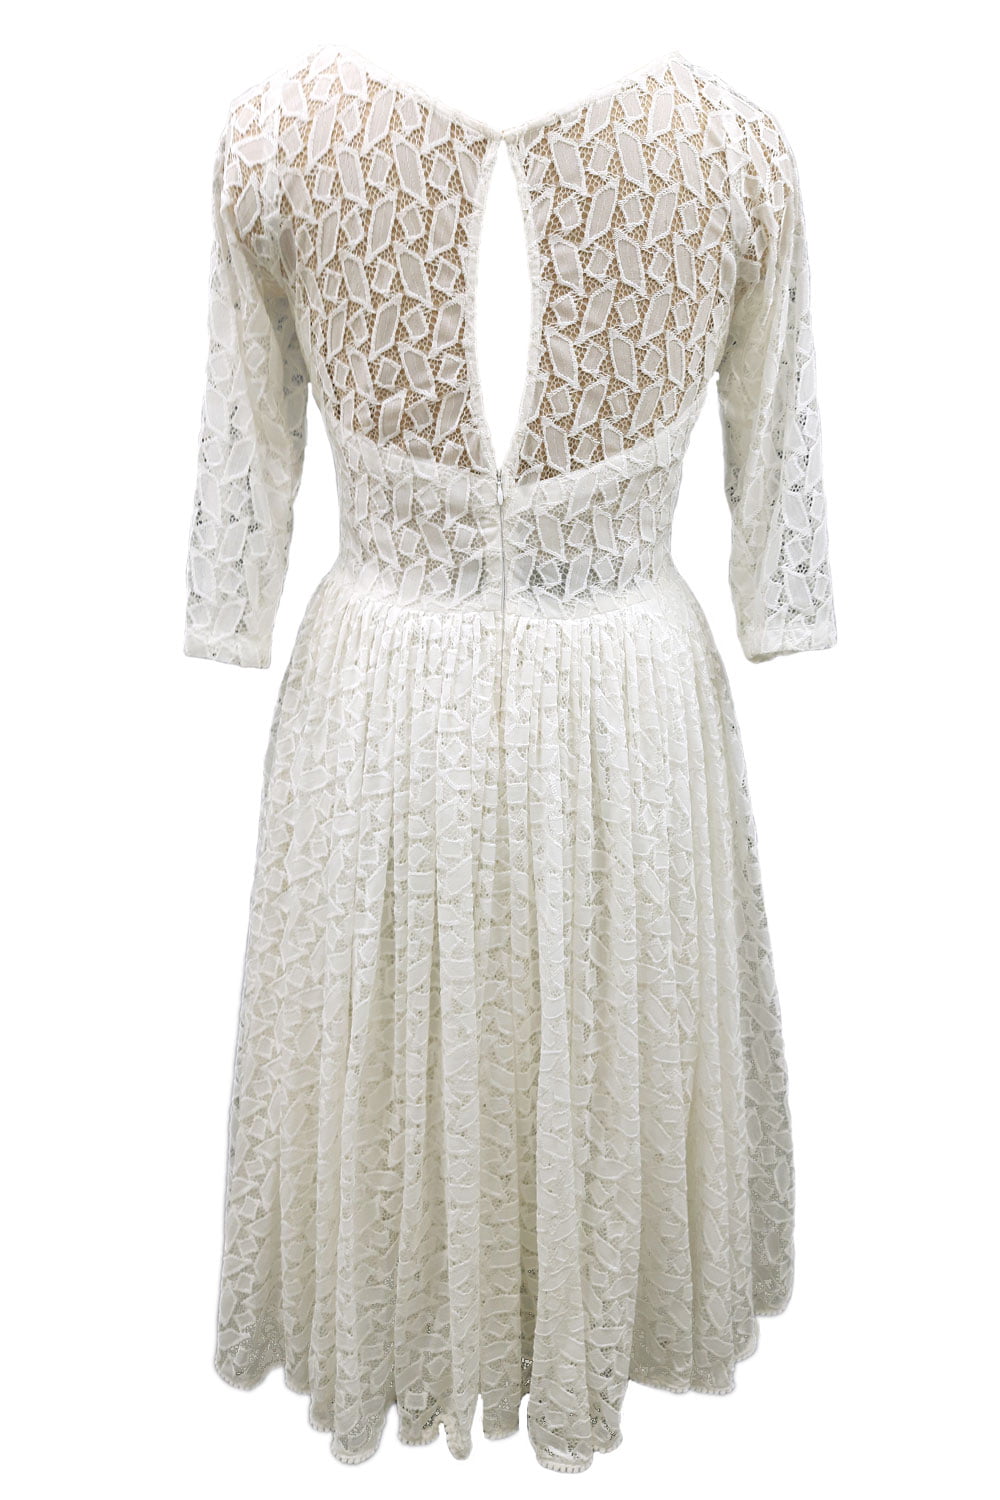 White Lace Wedding Dress Back